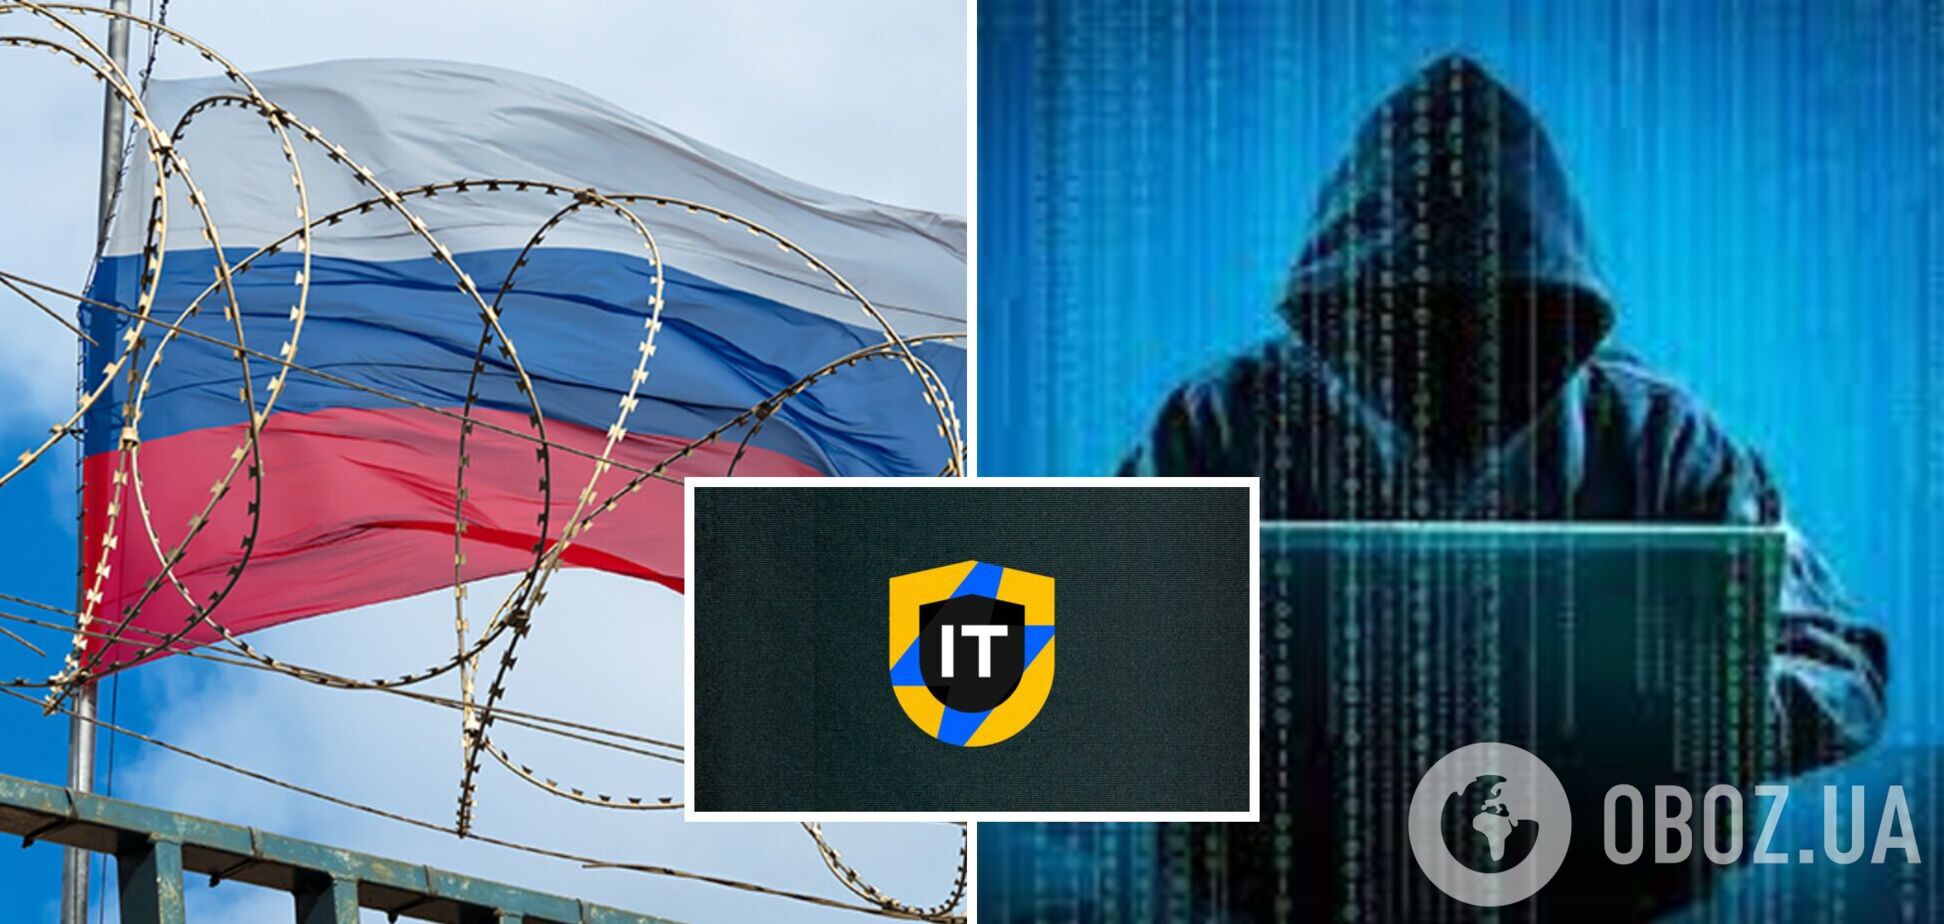 'Прямое попадание': украинская IT ARMY устроила смелые диверсии против РФ. Список операций